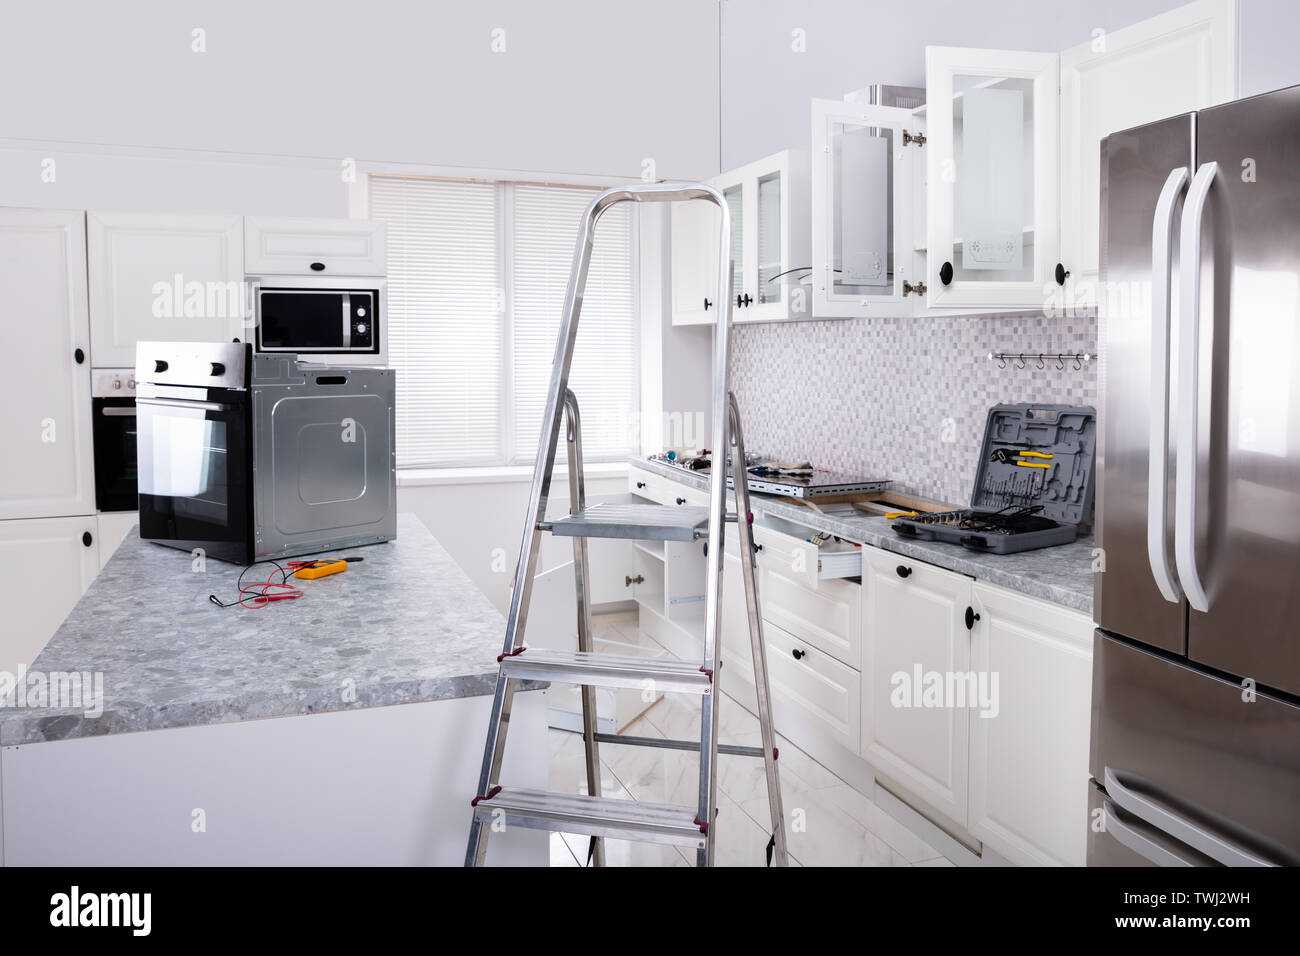 Einbau der neuen Micro Backofen und Induktionsherd in der modernen Küche Stockfoto